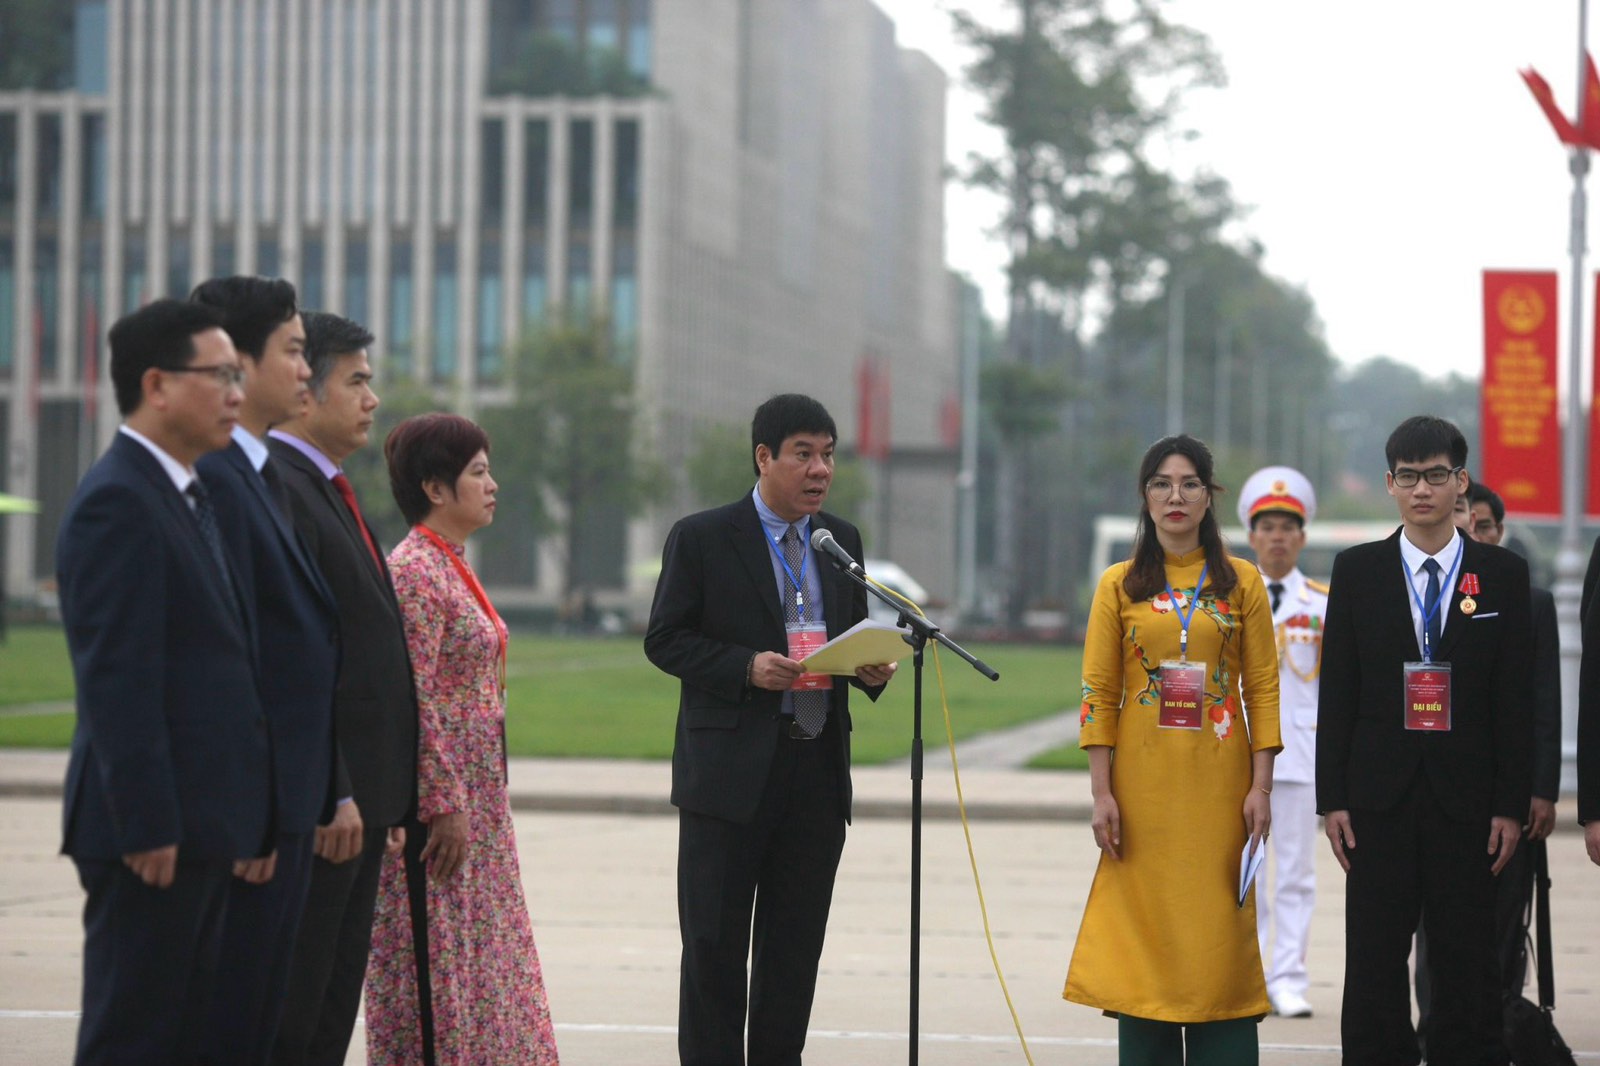 Cục trưởng Cục quản lý chất lượng Huỳnh Văn Chương thay mặt đoàn đại biểu báo công dâng Bác.